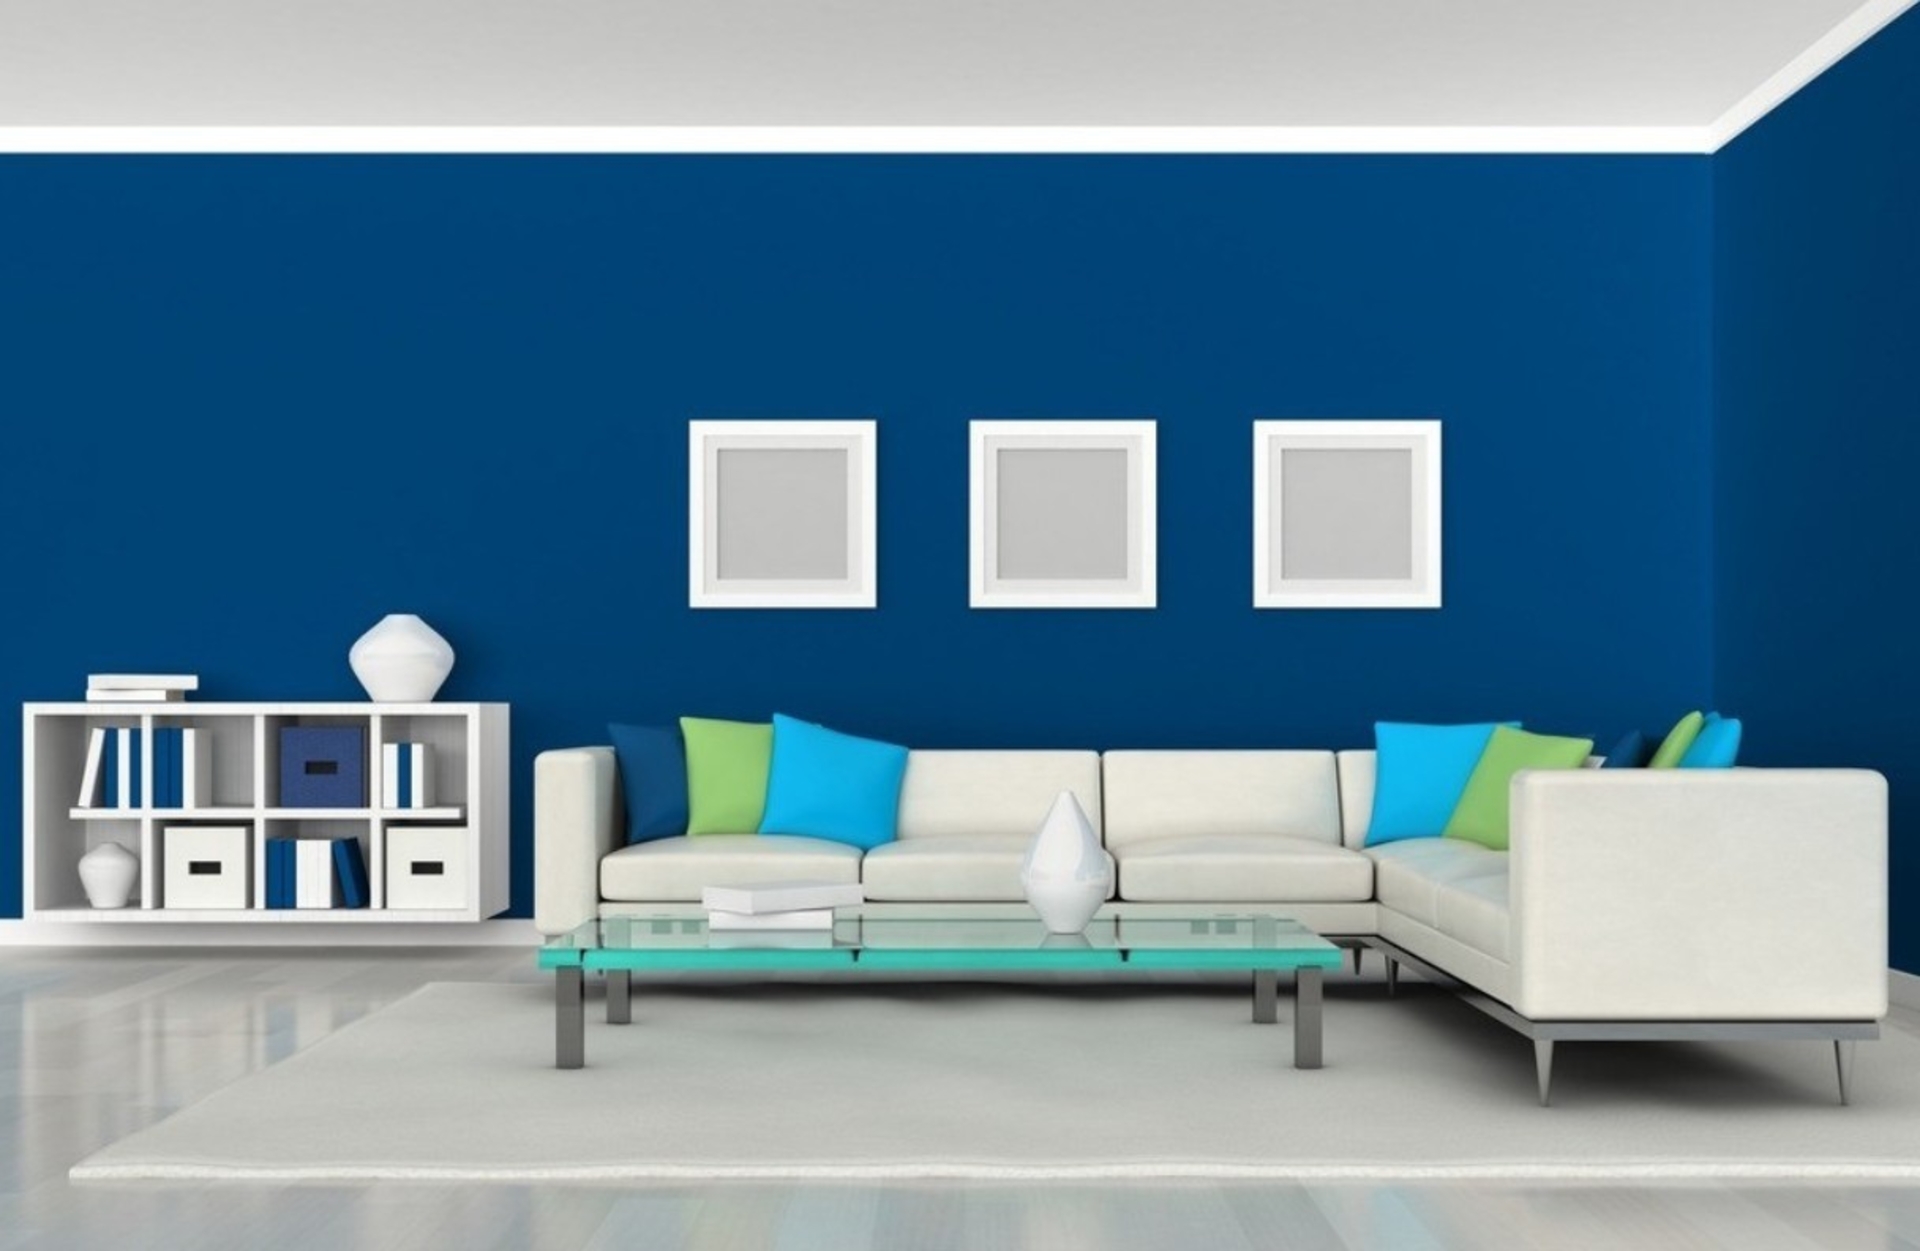 Phòng khách ấn tượng với sự tương phản giữa hai khối màu xanh dương - trắng.